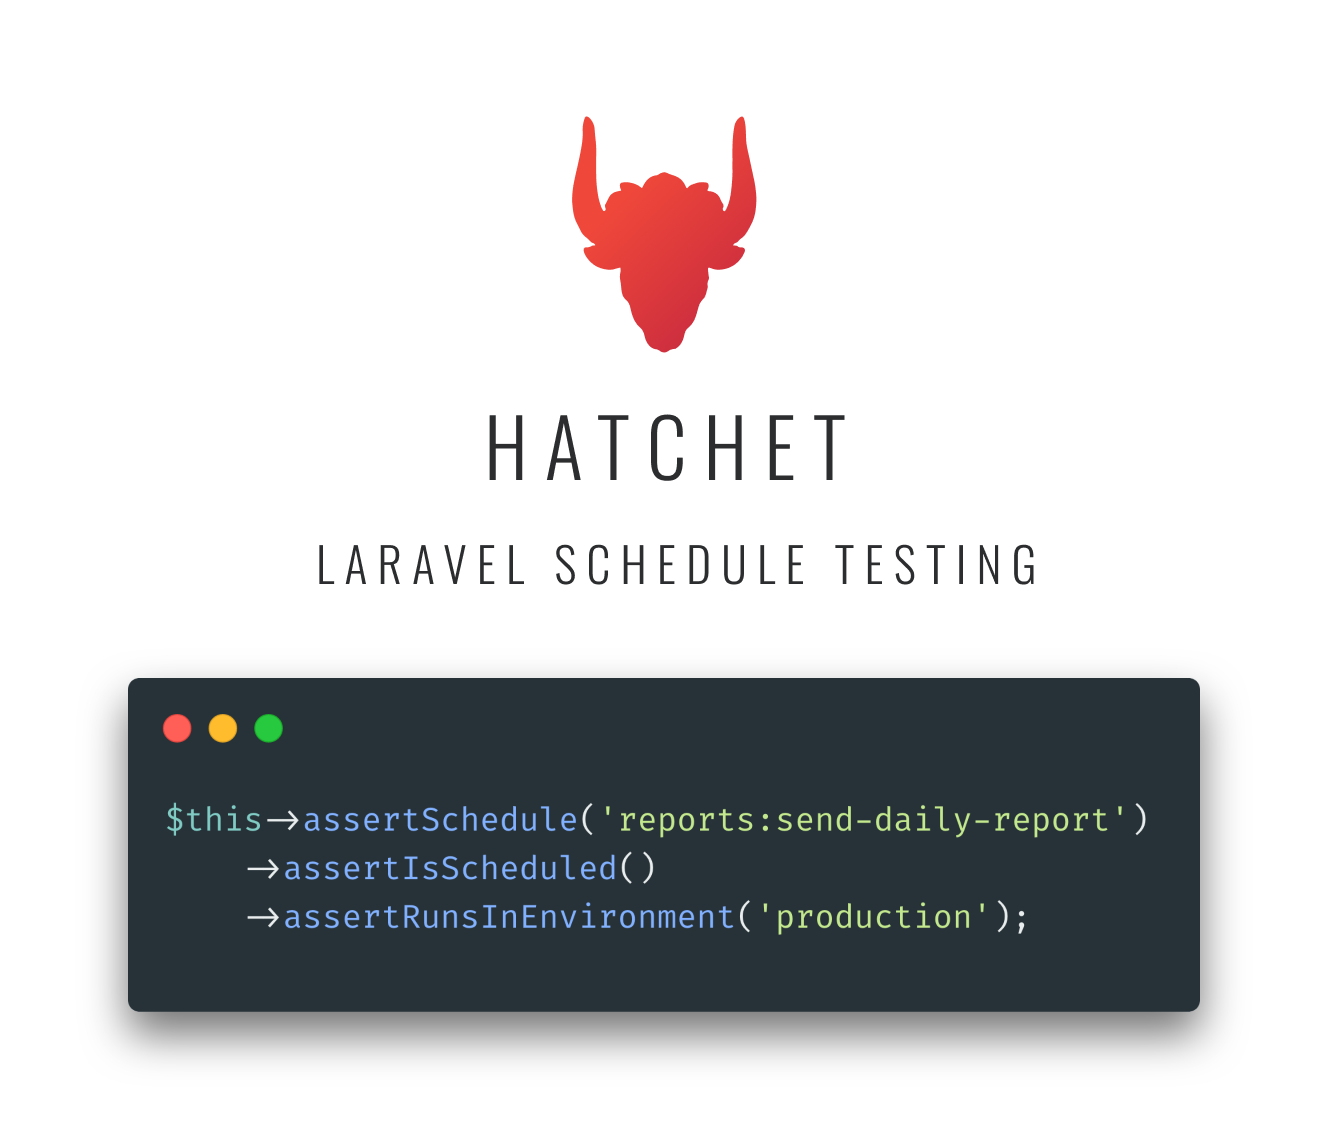 Hatchet's Laravel Schedule Testing